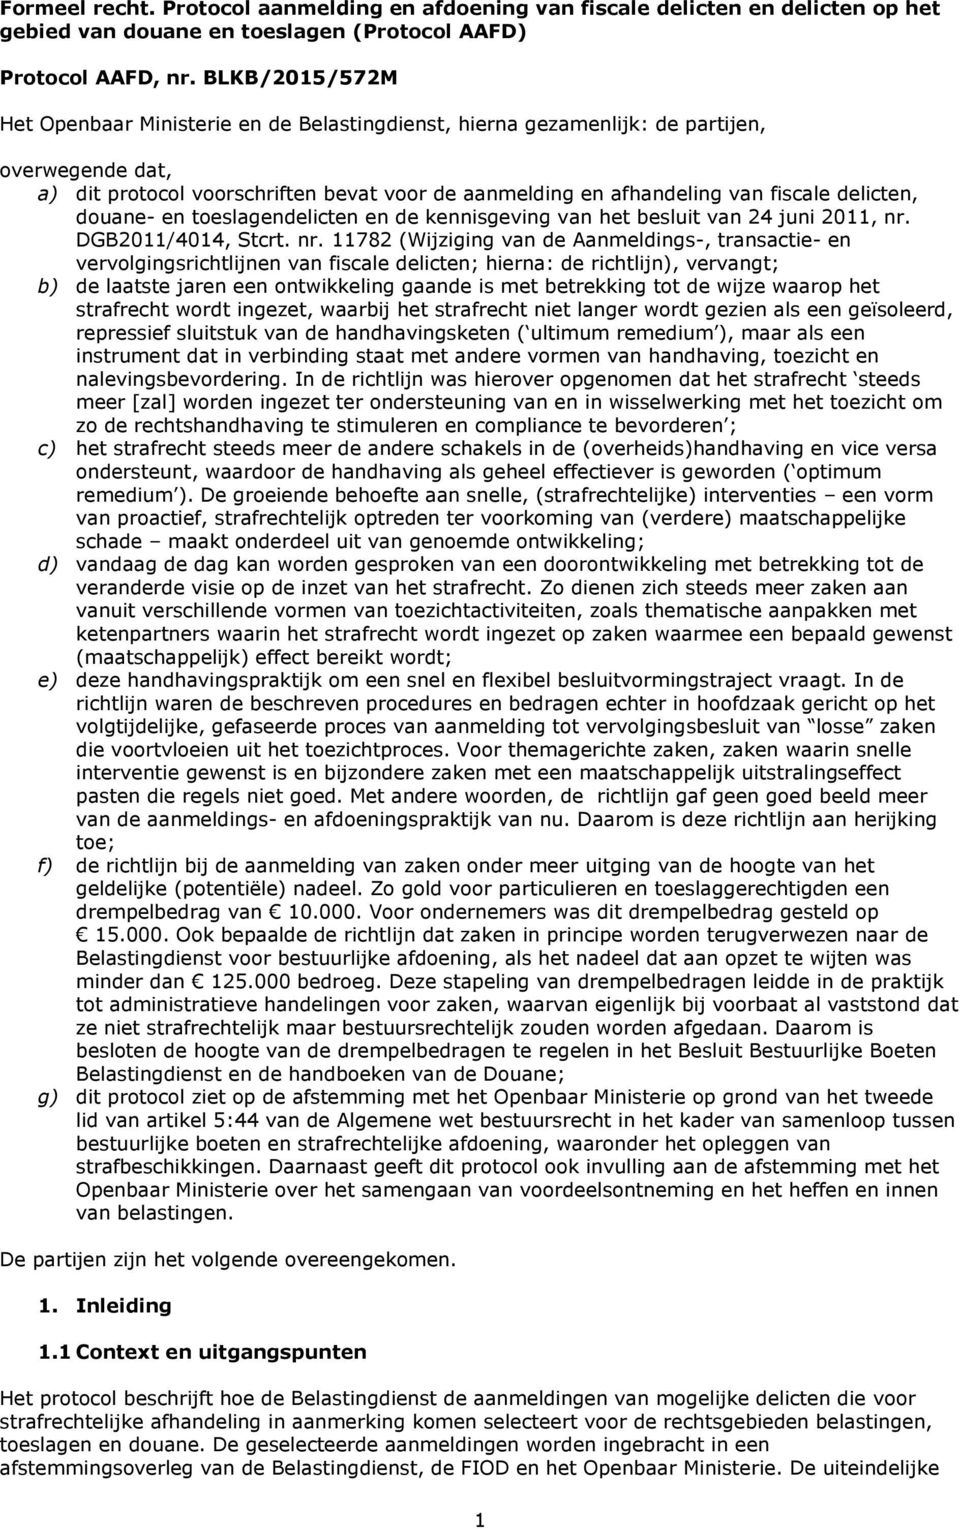 delicten, douane- en toeslagendelicten en de kennisgeving van het besluit van 24 juni 2011, nr.